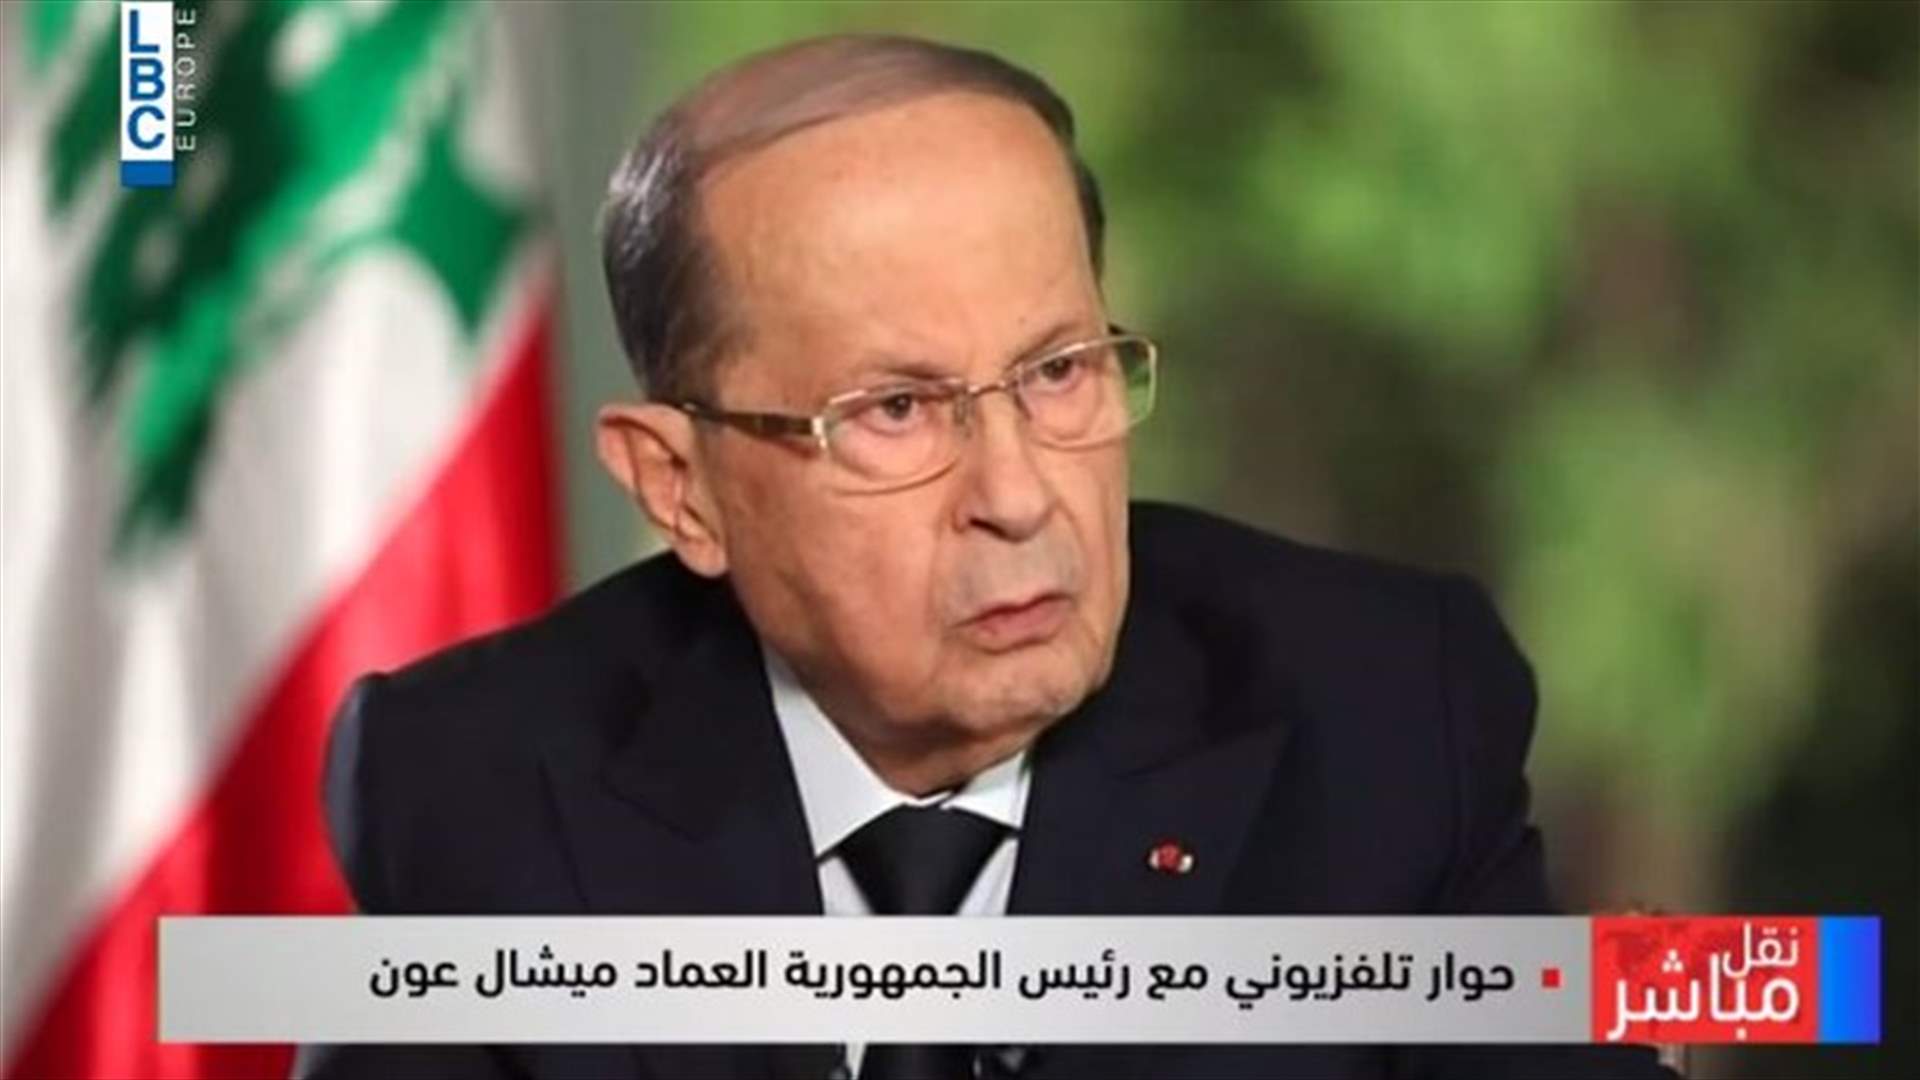 الرئيس عون يؤكد أنه ليس خائفا على العهد بل على لبنان... وهذا ما قاله عن موعد الاستشارات